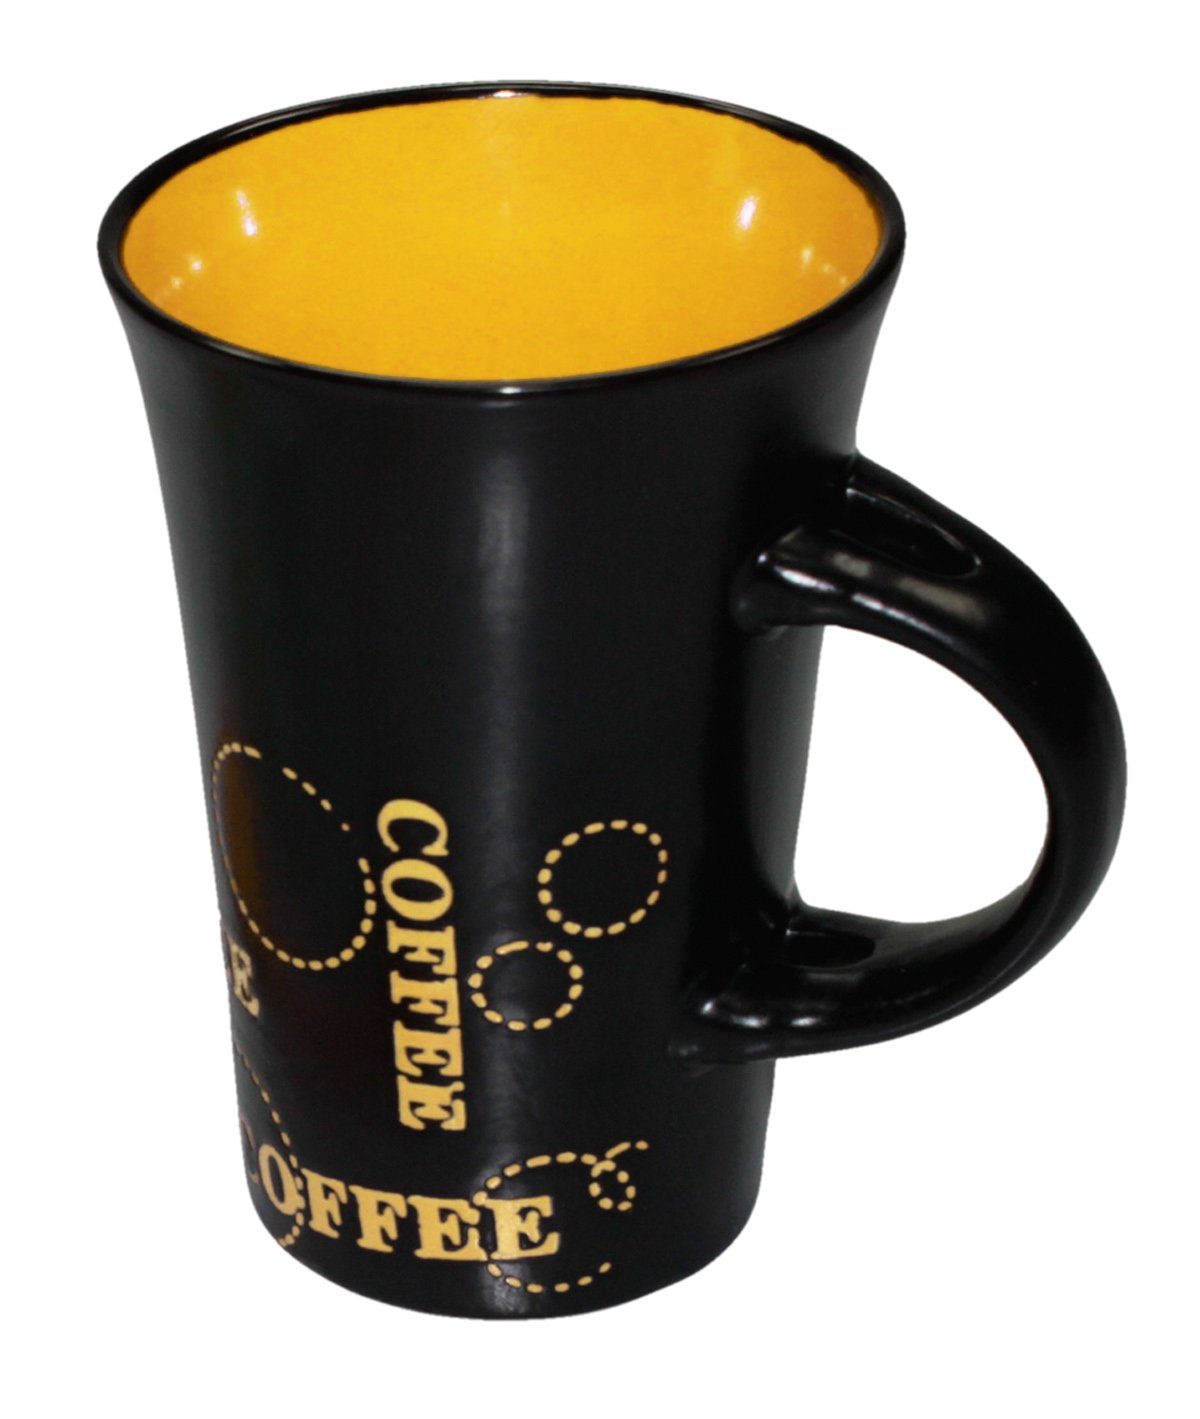 Haus und Deko Geschirr-Set Keramik Kaffeebecher Kaffeetasse schwarz bunt XL Tasse Becher passend (1-tlg), Keramik Gelb | Geschirr-Sets